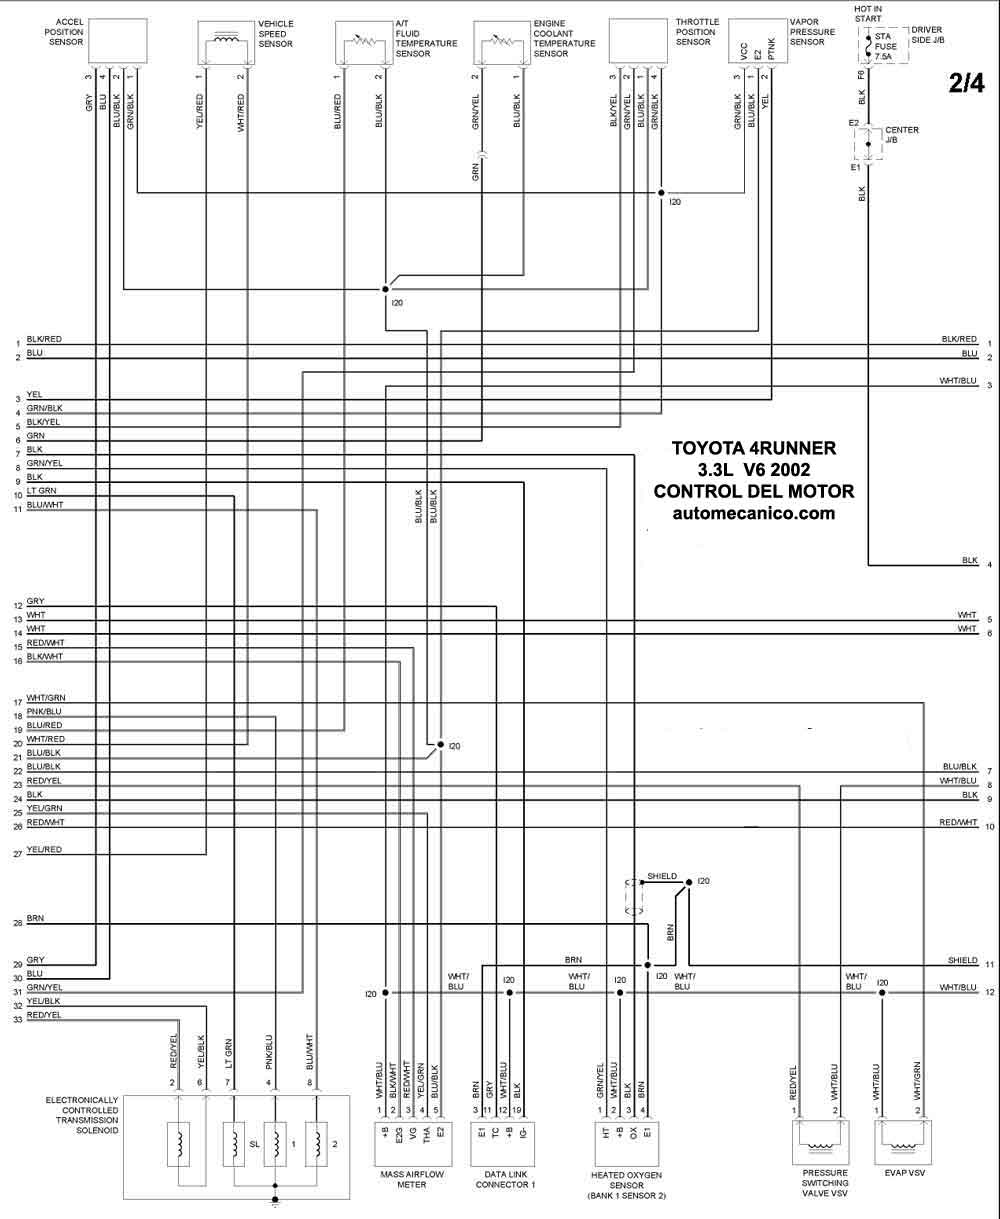 Toyota - Diagramas control del motor 2002 - Graphics - Esquemas | Vehiculos  - Motores - Componentes | Mecanica automotriz